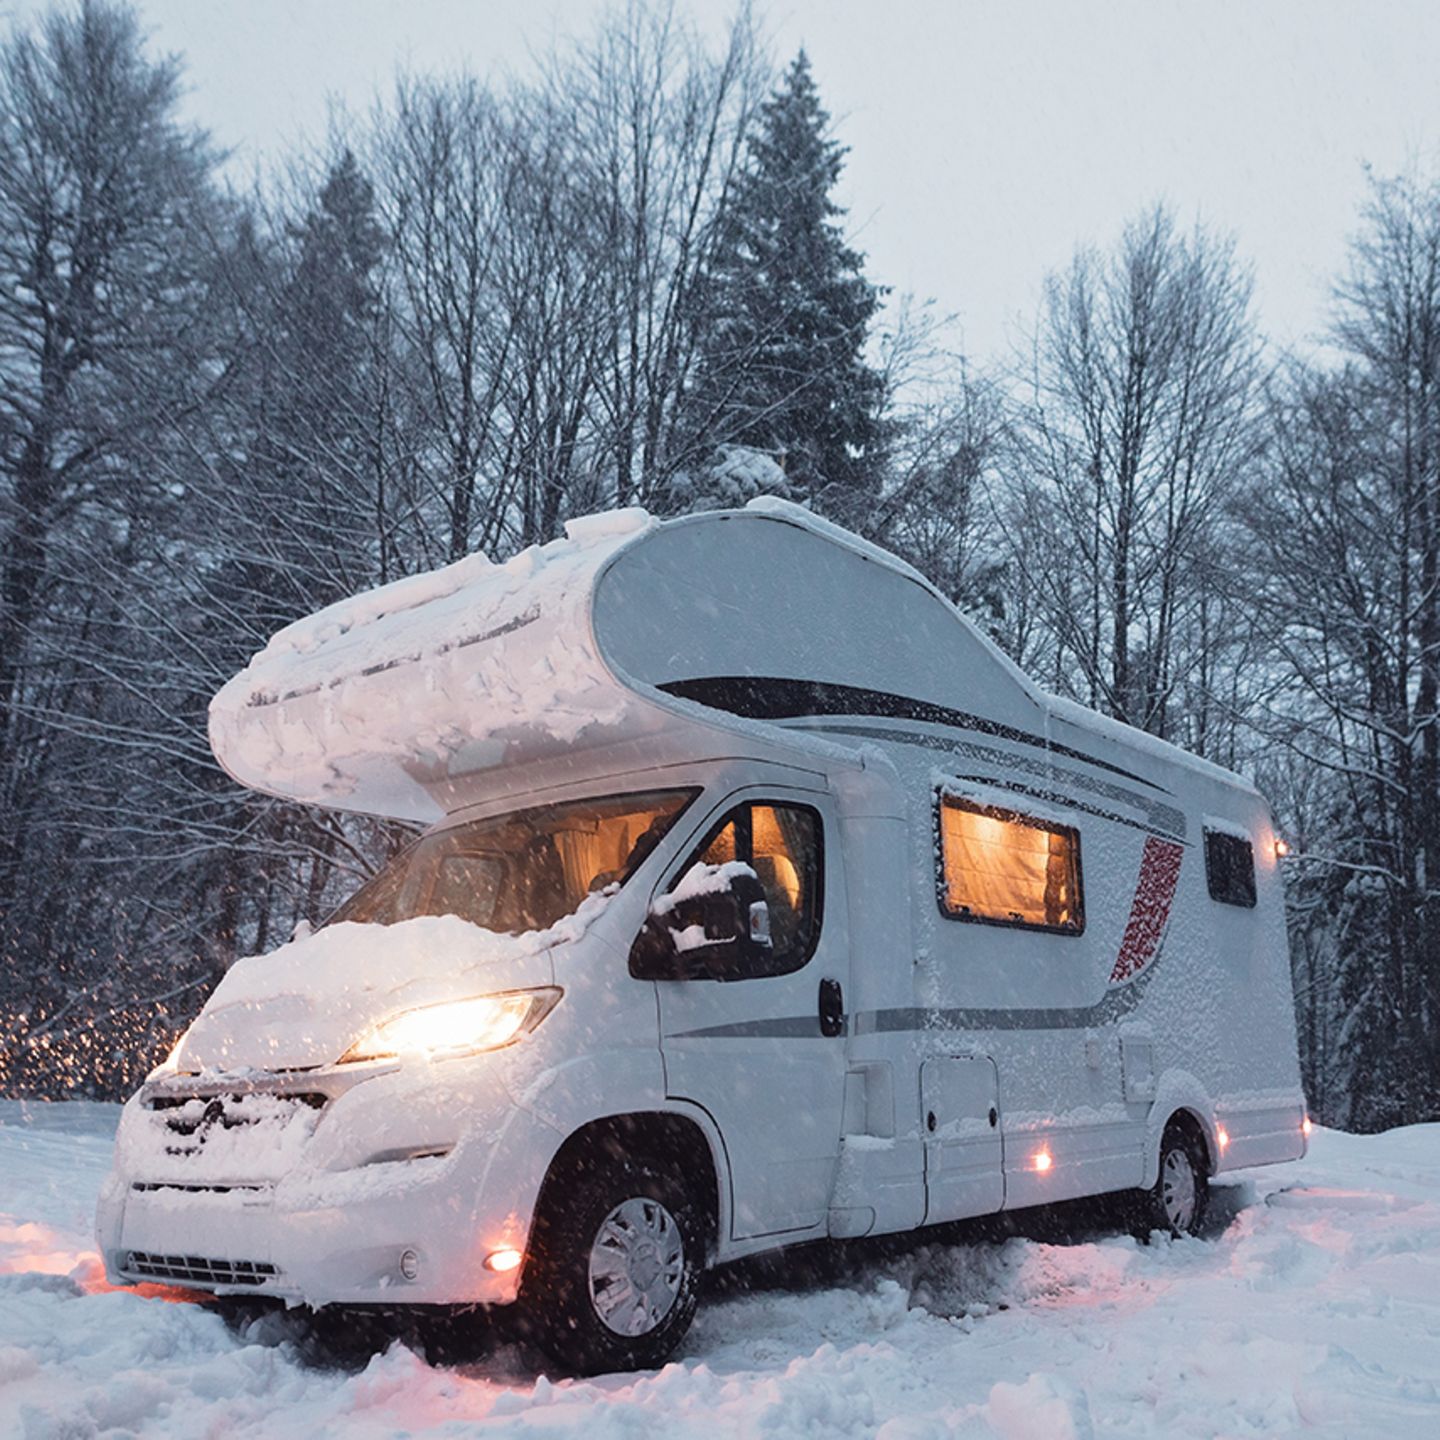 Reiseplanung: Diese fünf Fehler sollten Sie als Winter-Camper